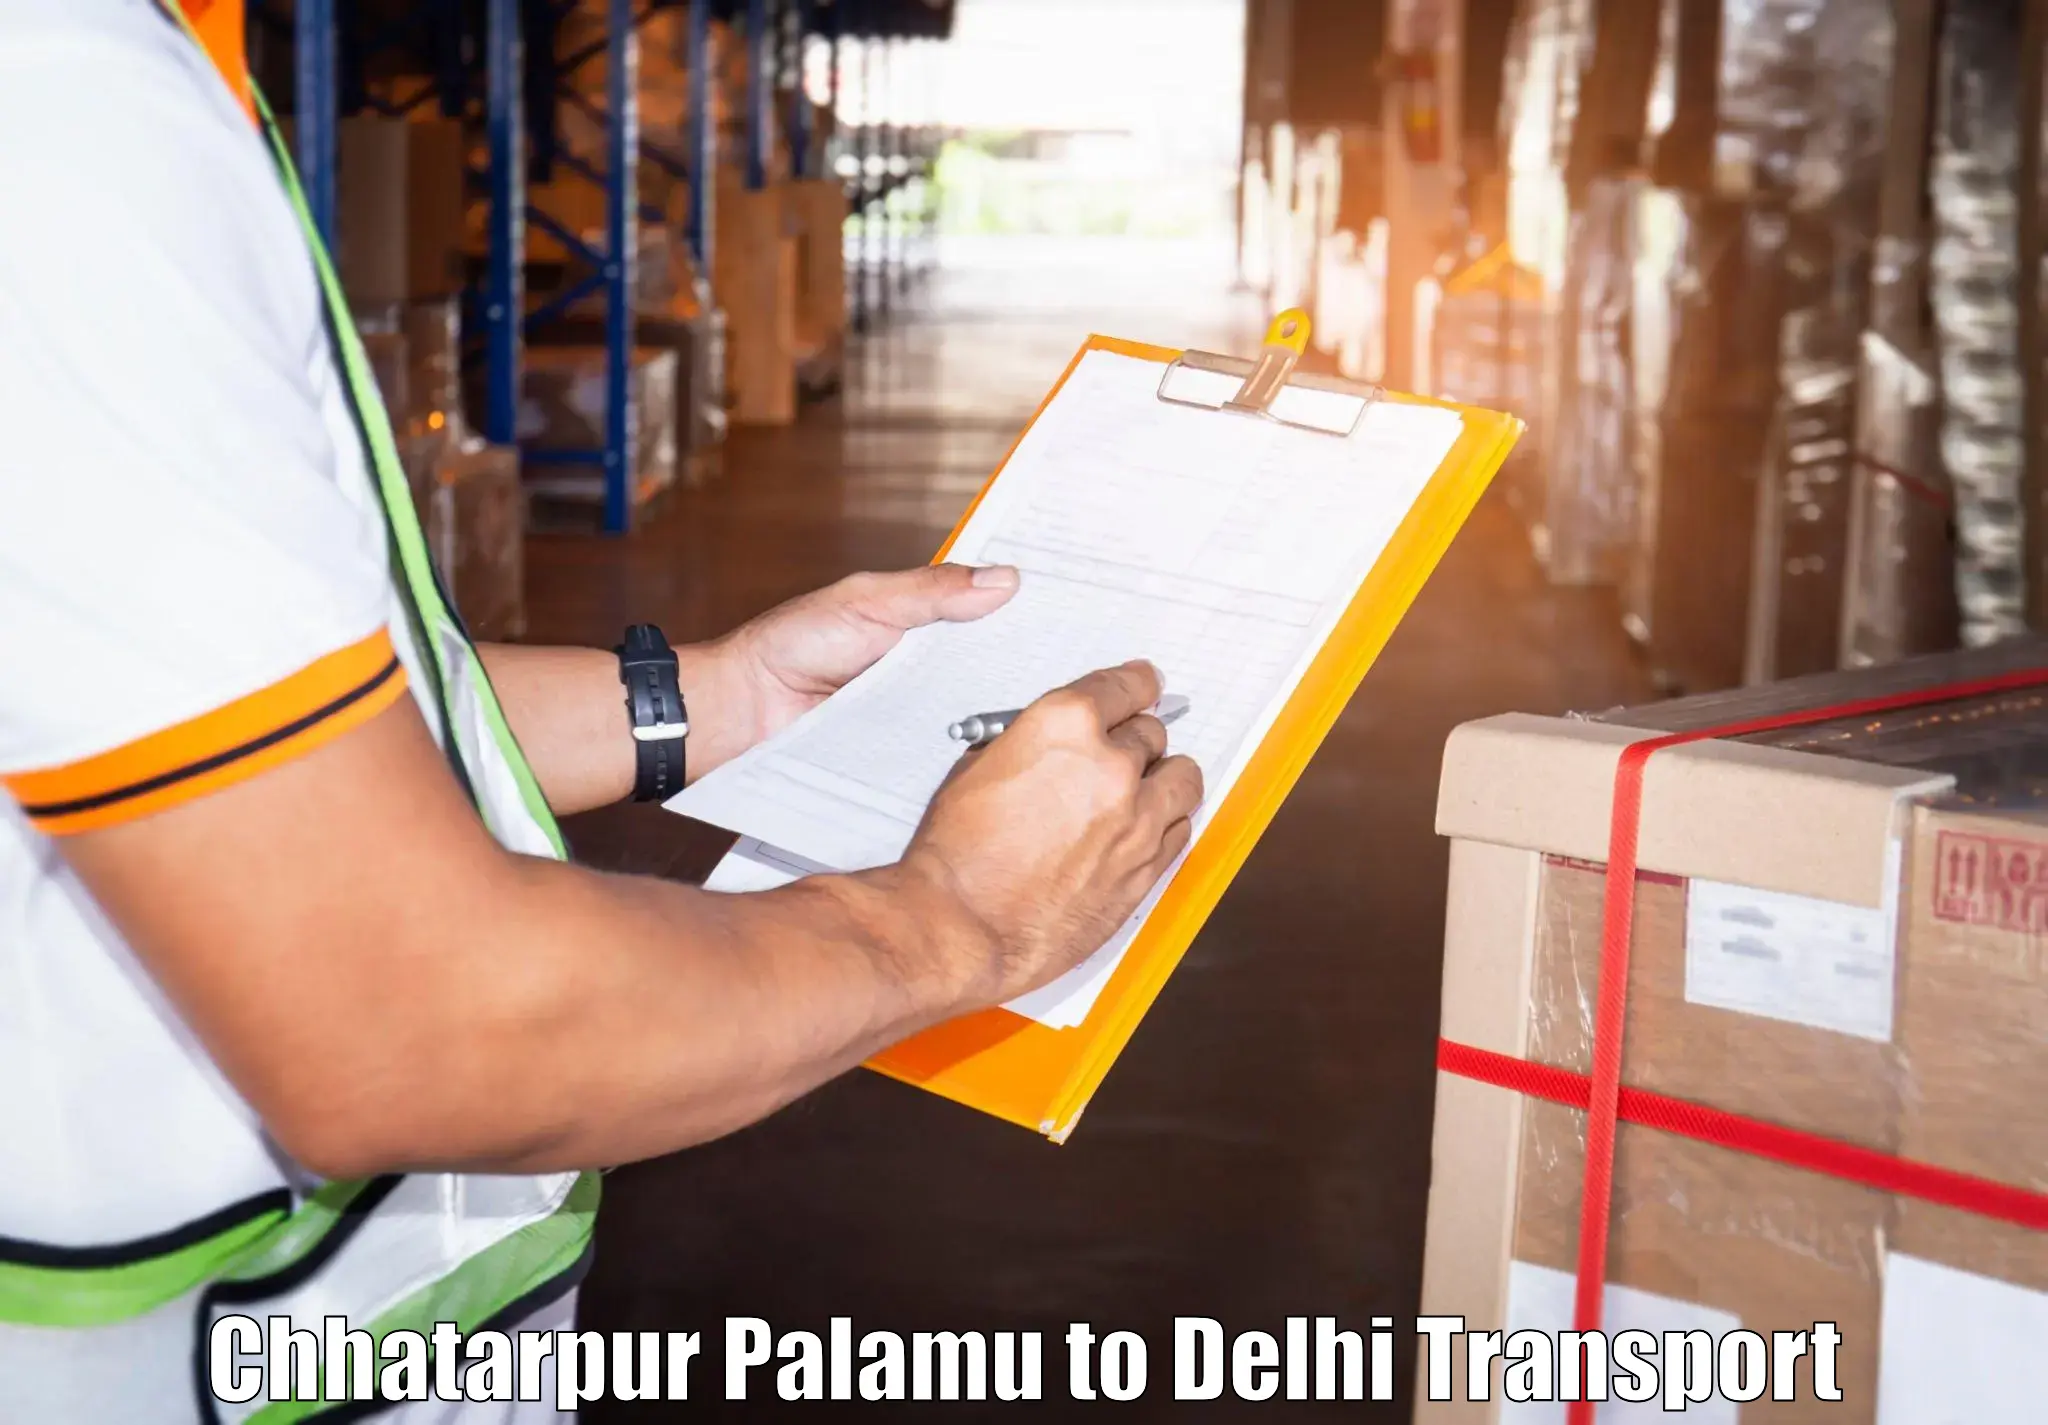 Container transport service Chhatarpur Palamu to Jawaharlal Nehru University New Delhi